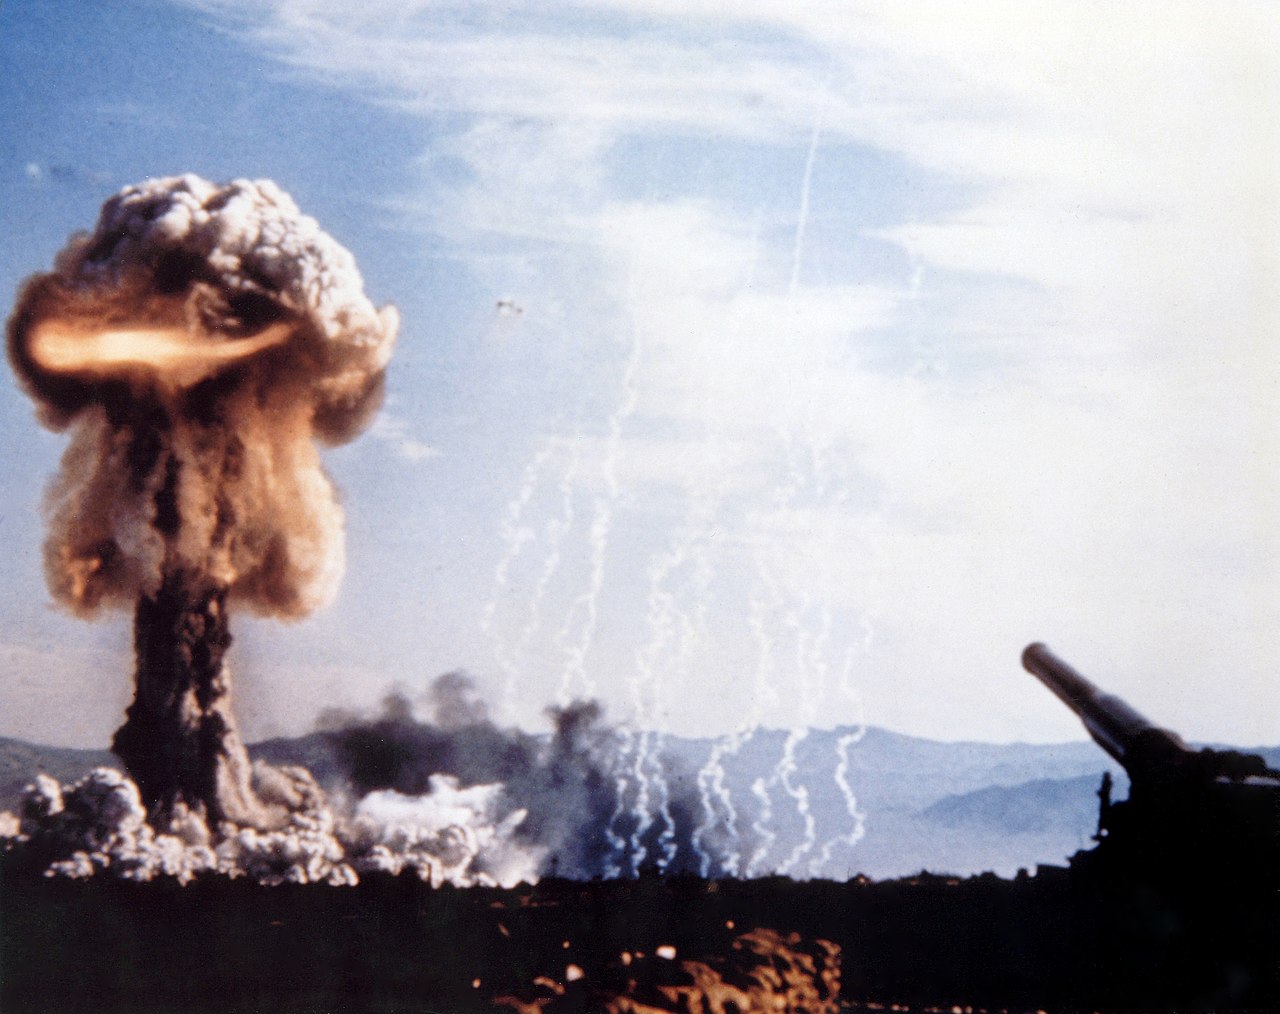 Ядерный взрыв снаряда Grable, запущенного артиллерийской установкой: 280-мм атомной пушкой. США